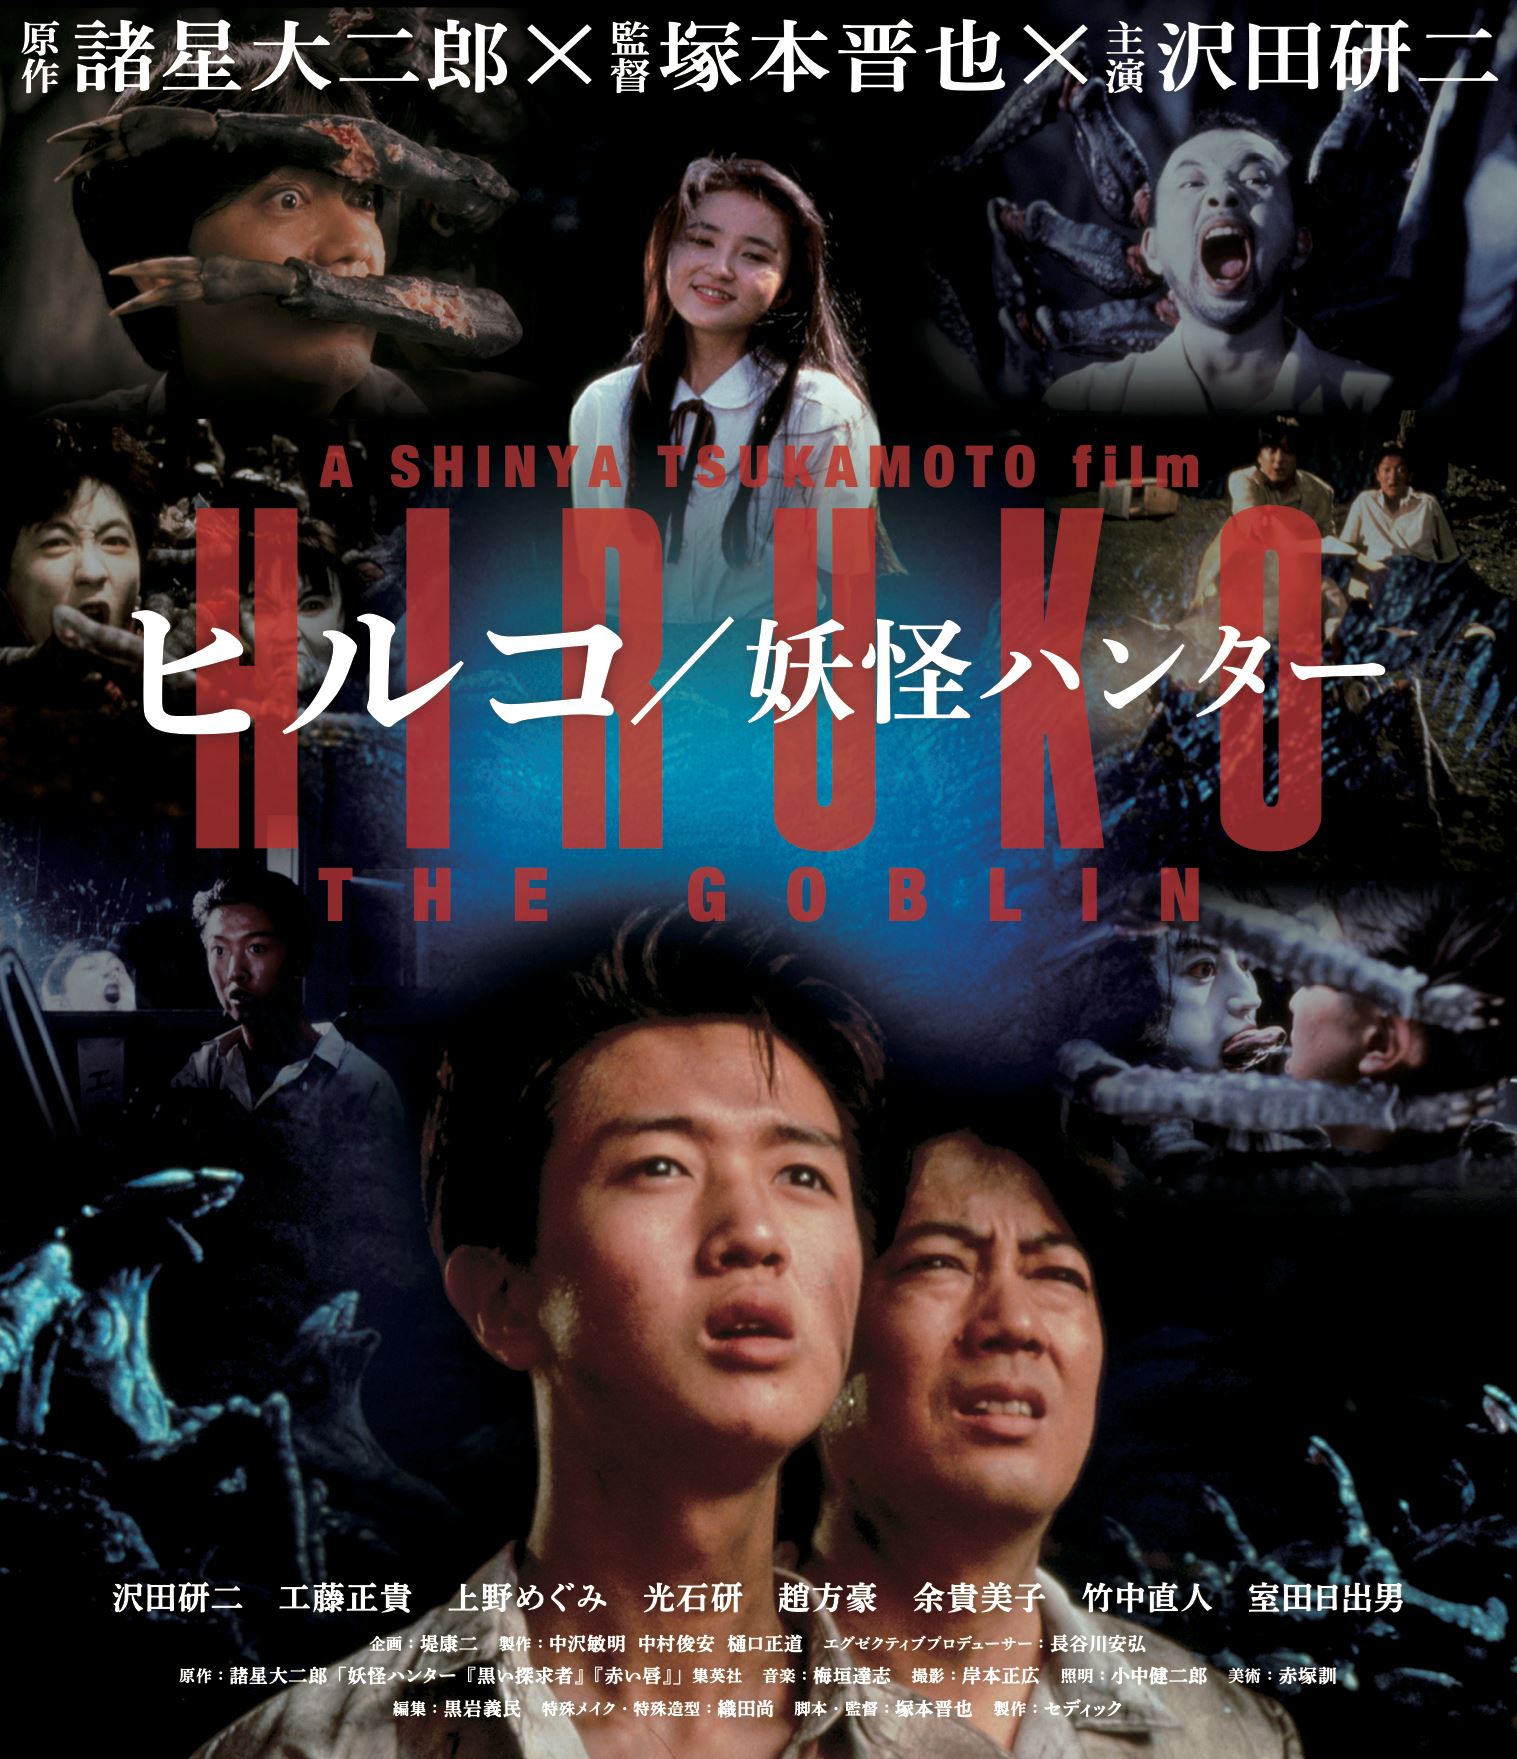 『ヒルコ／妖怪ハンター』Blu-rayジャケット (c)2009 KEIKO KUSAKABE・MAKOTOYA CO.,LTD/SHINYA TSUKAMOTO・KAIJYU THEATER ALL RIGHTS RESERVED. (c)2009 DAIJIRO MOROHOSHI/SHUEISHA